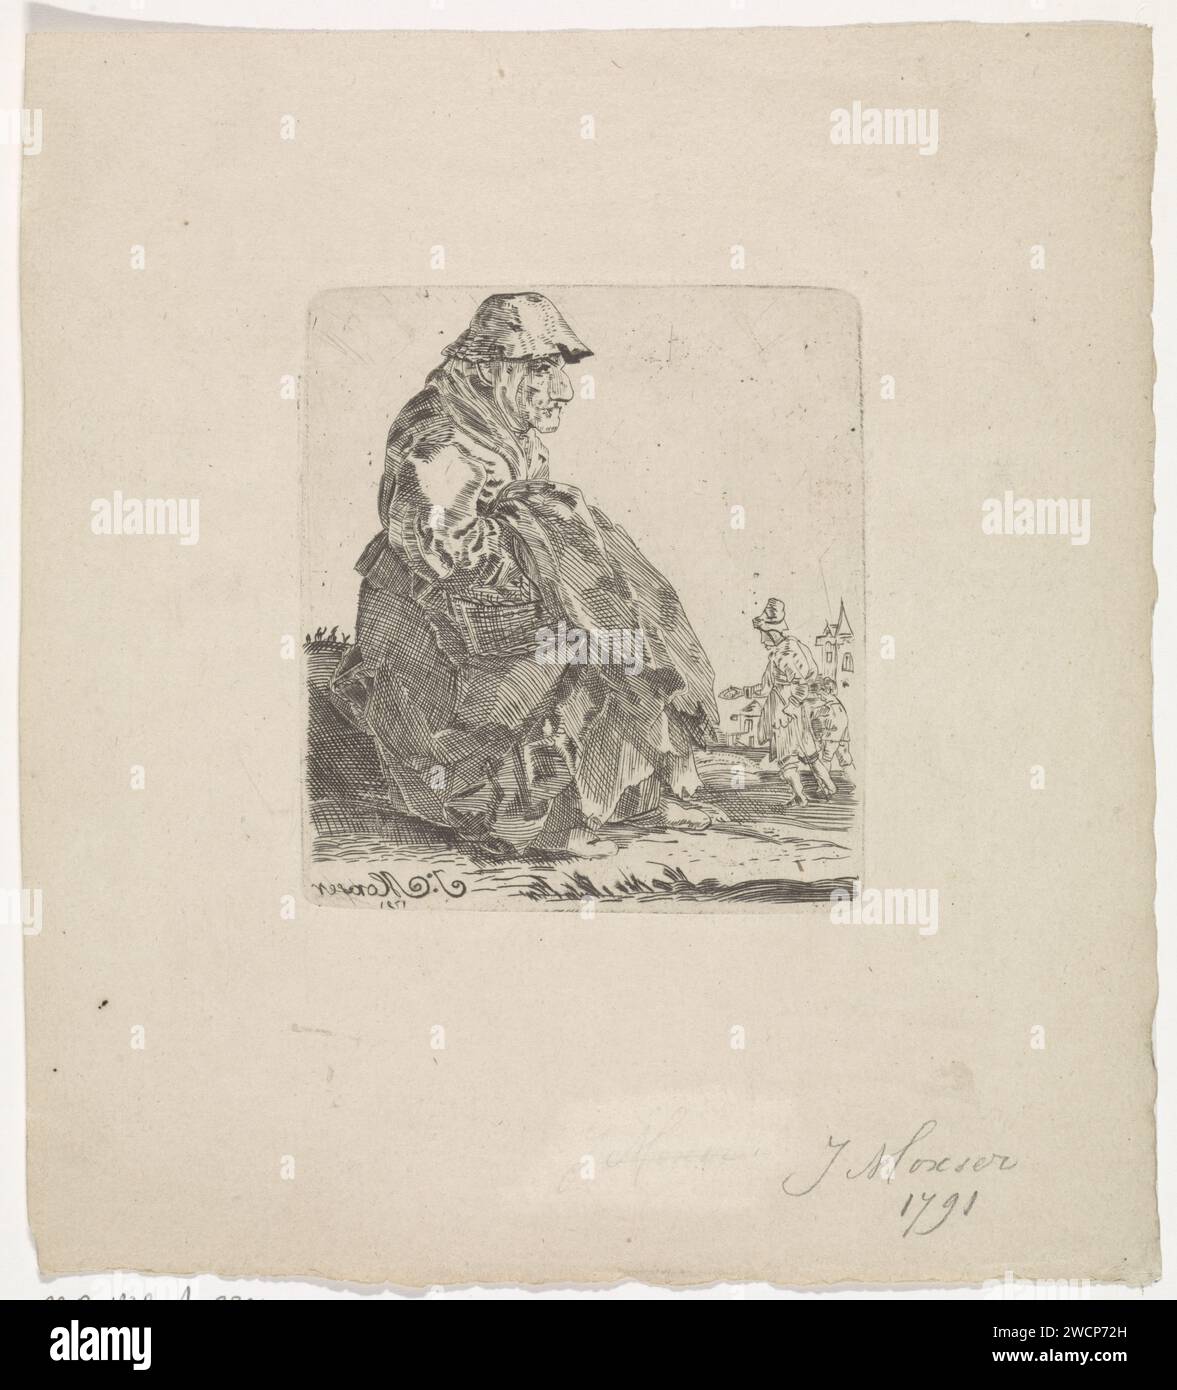 Sitzende alte Frau, J. Moxser, 1791 drucken Eine sitzende alte Frau, die Hände und einen Korb unter ihrer Vorderseite. Ein Mann im Hintergrund. Niederländisches Papier, das die hässliche alte Frau graviert Stockfoto